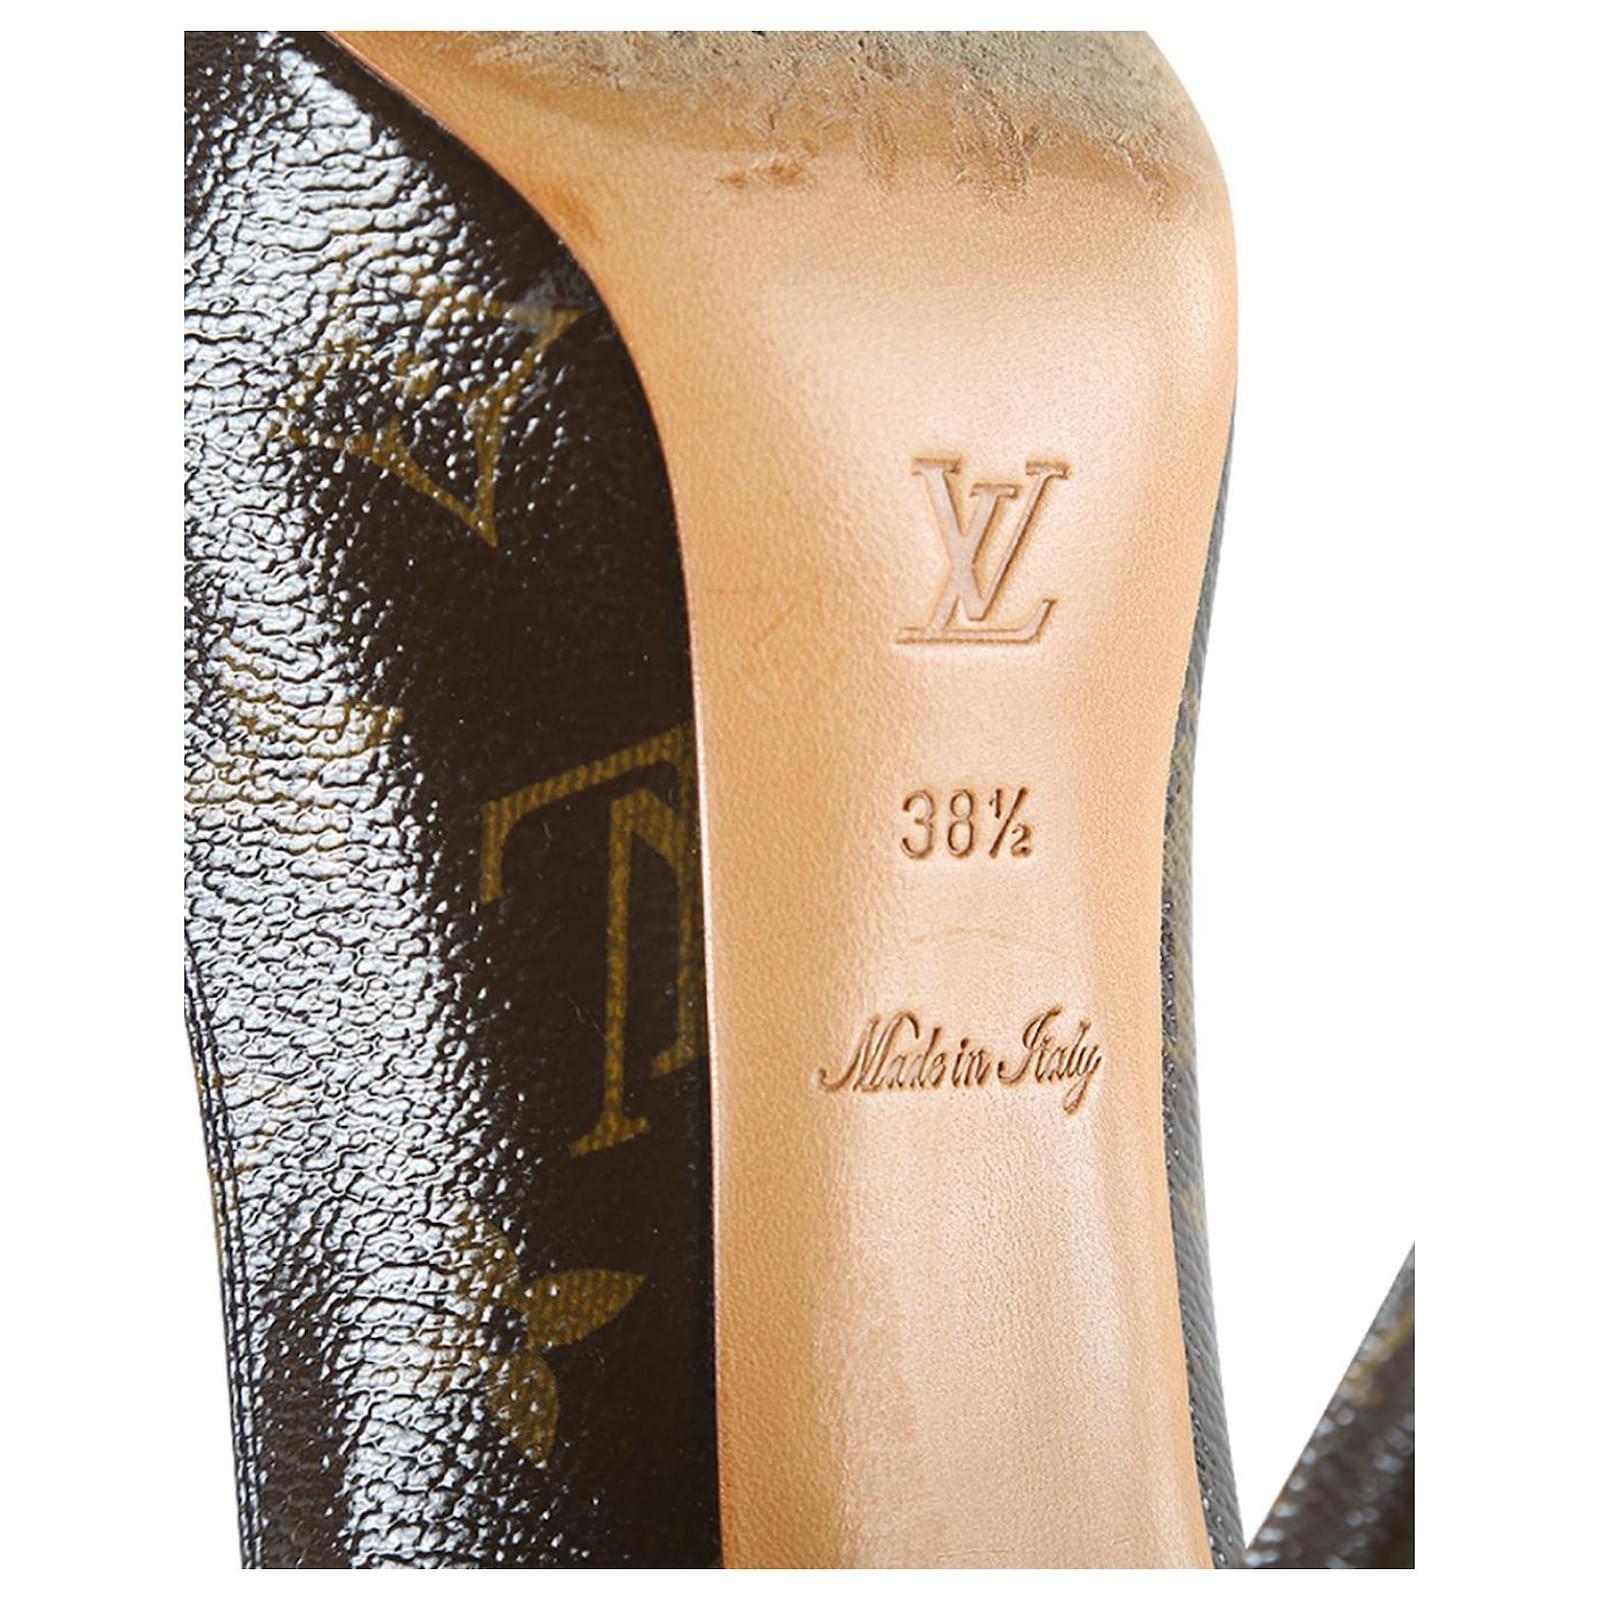 Louis Vuitton Monogram Canvas Fetish Mary Jane Platform Pumps Size 38 Louis  Vuitton | The Luxury Closet